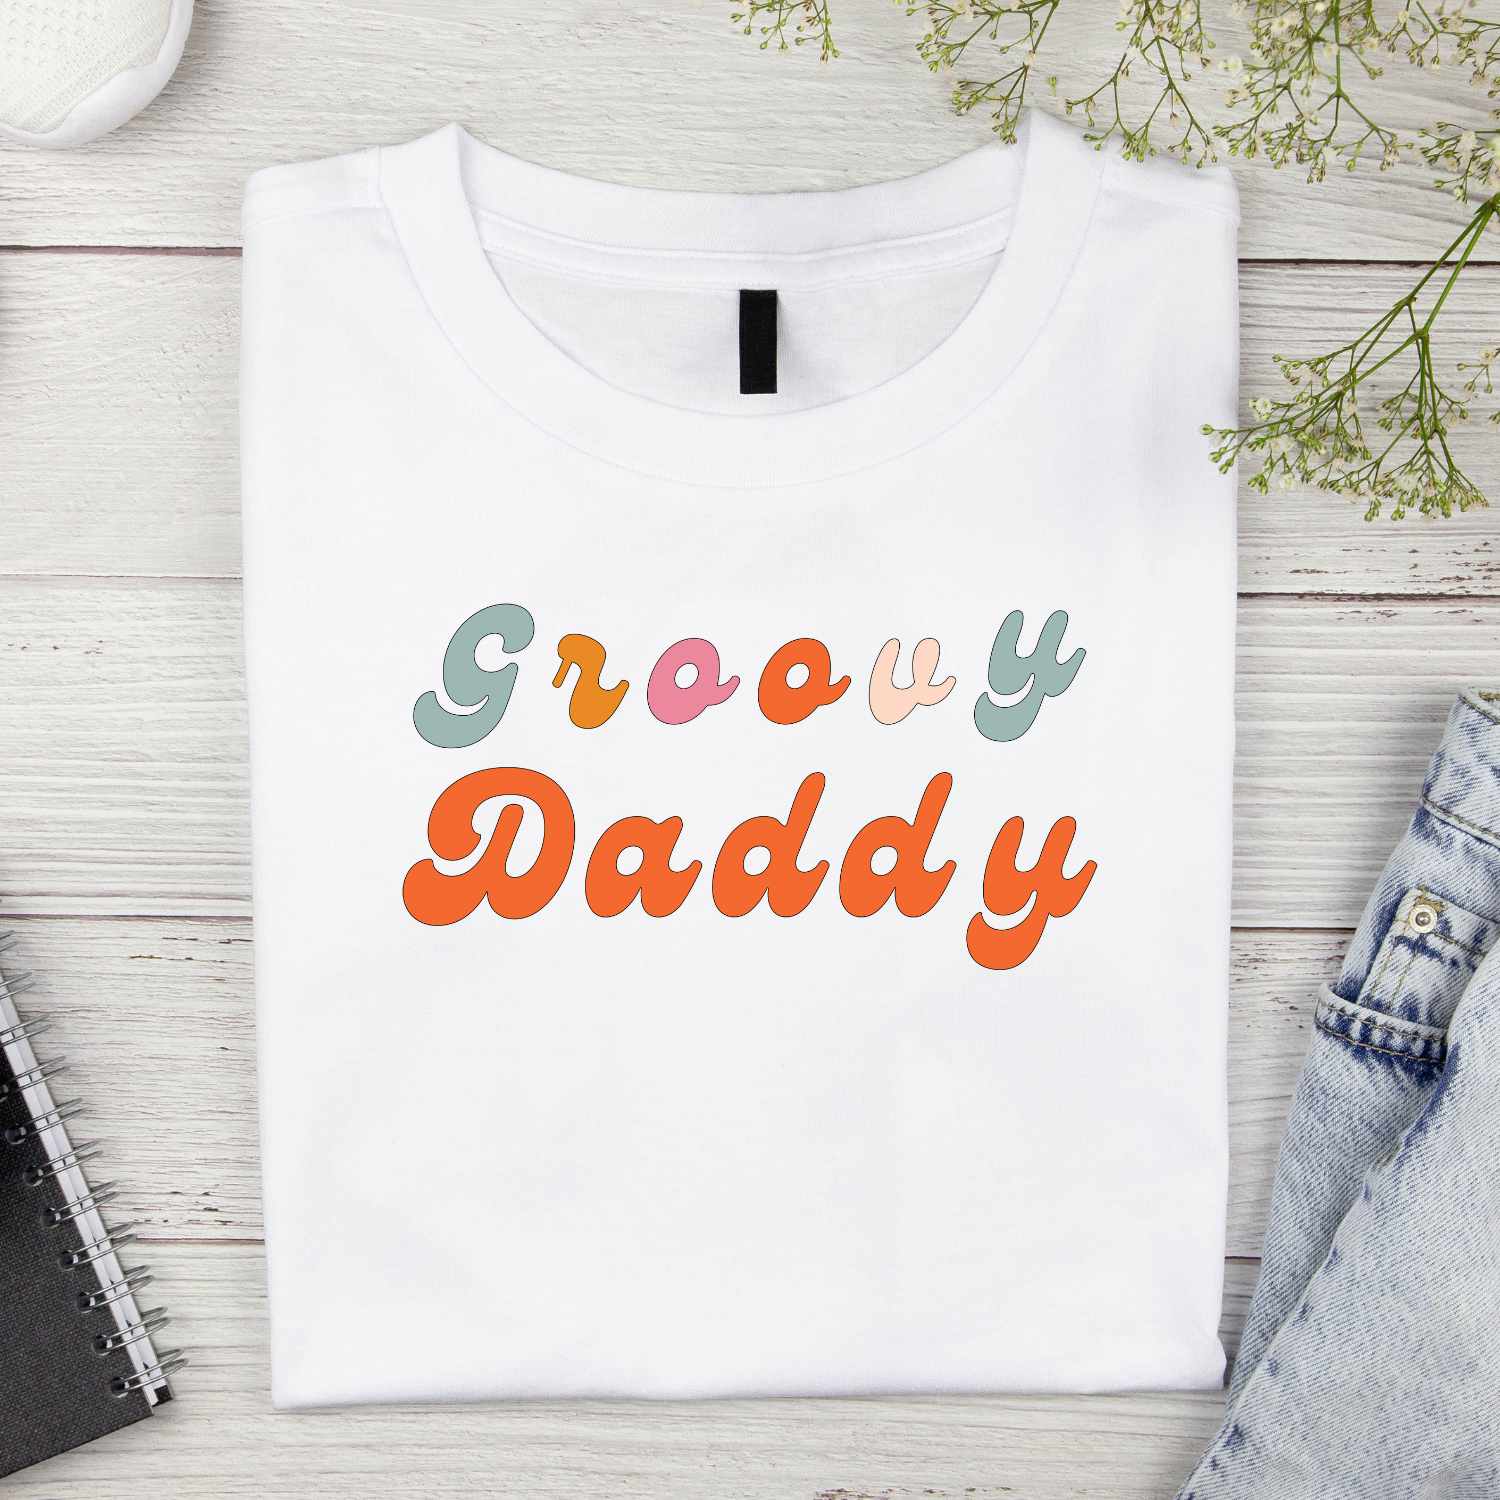 Groovy Daddy Tshirt Design